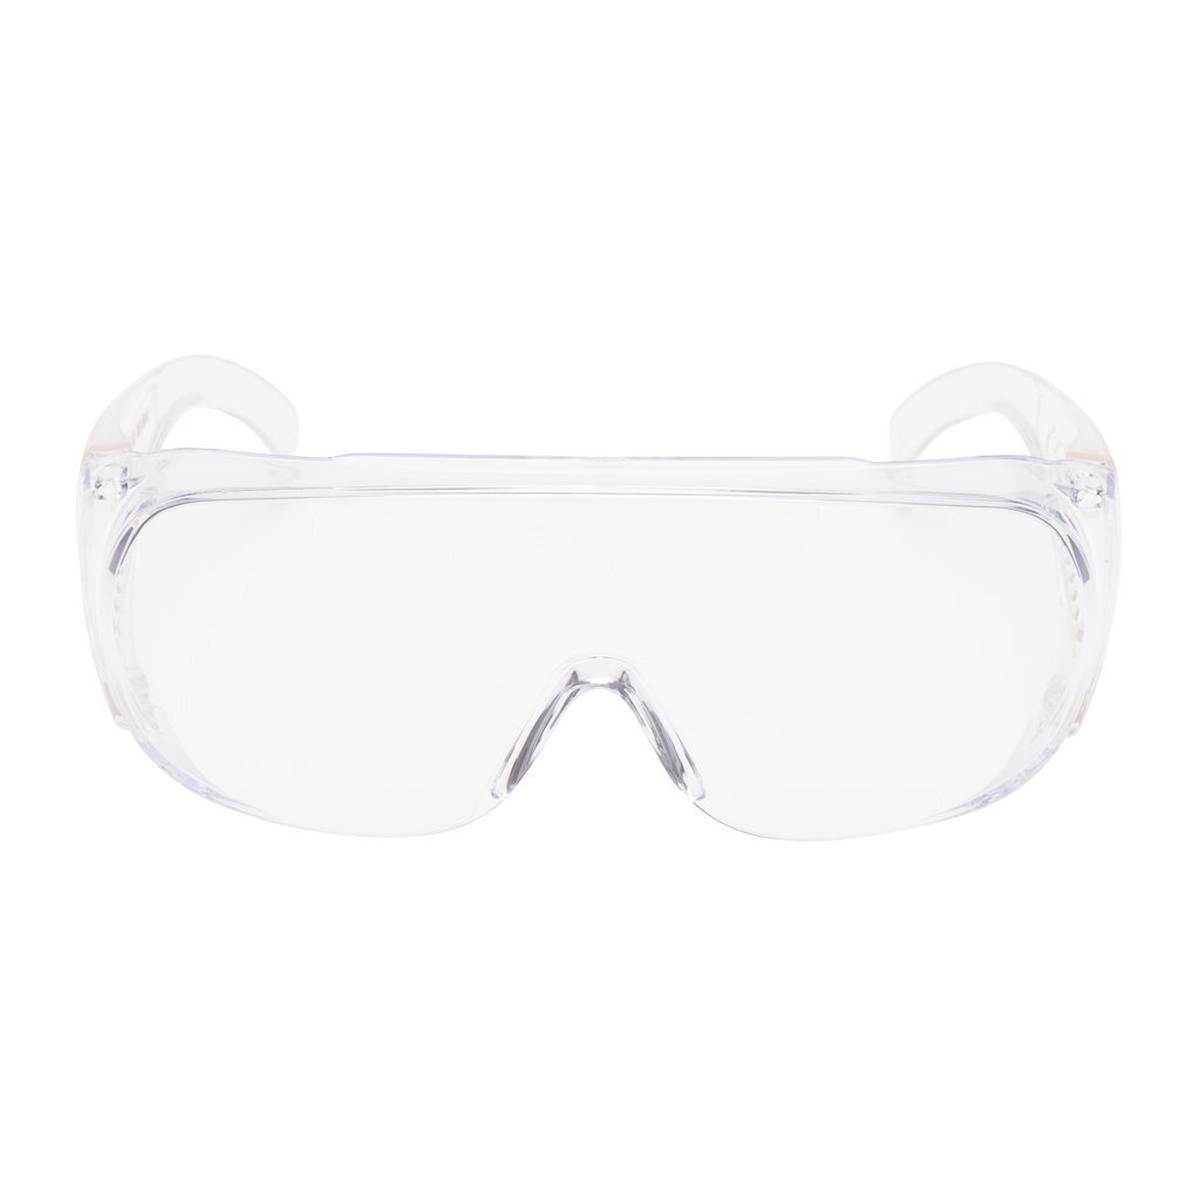 3M Gafas de protección para visitantes UV, PC, montura clara, transparente